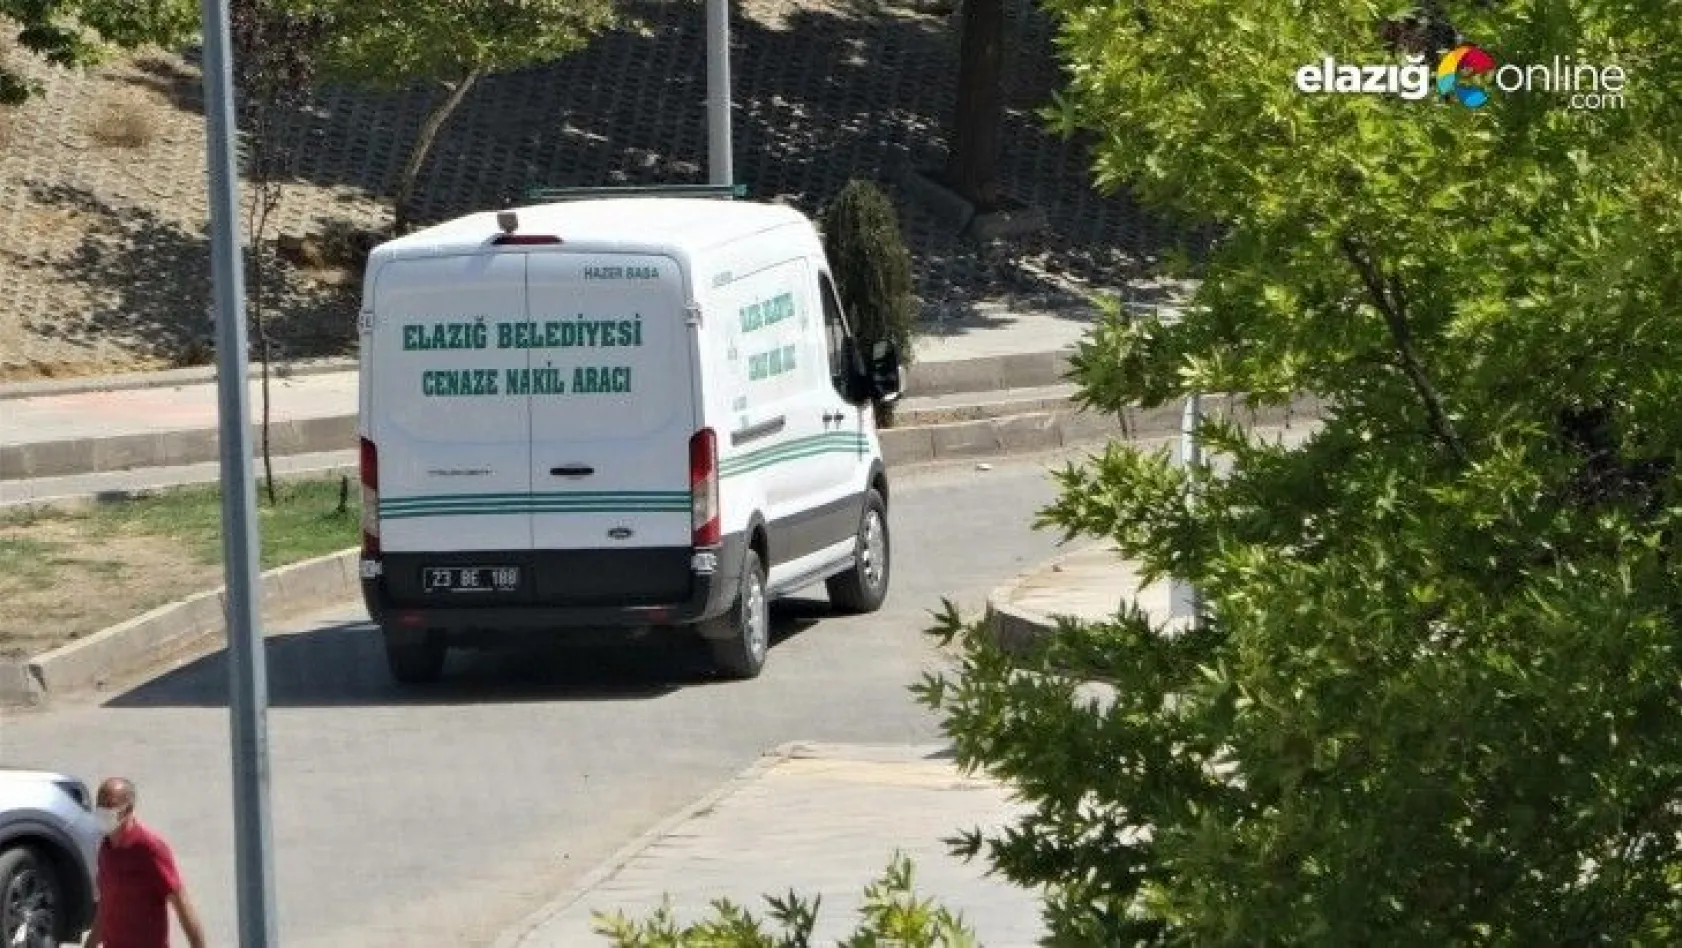 Elazığ'da 1 kişi sahte içkiden hayatını kaybetti